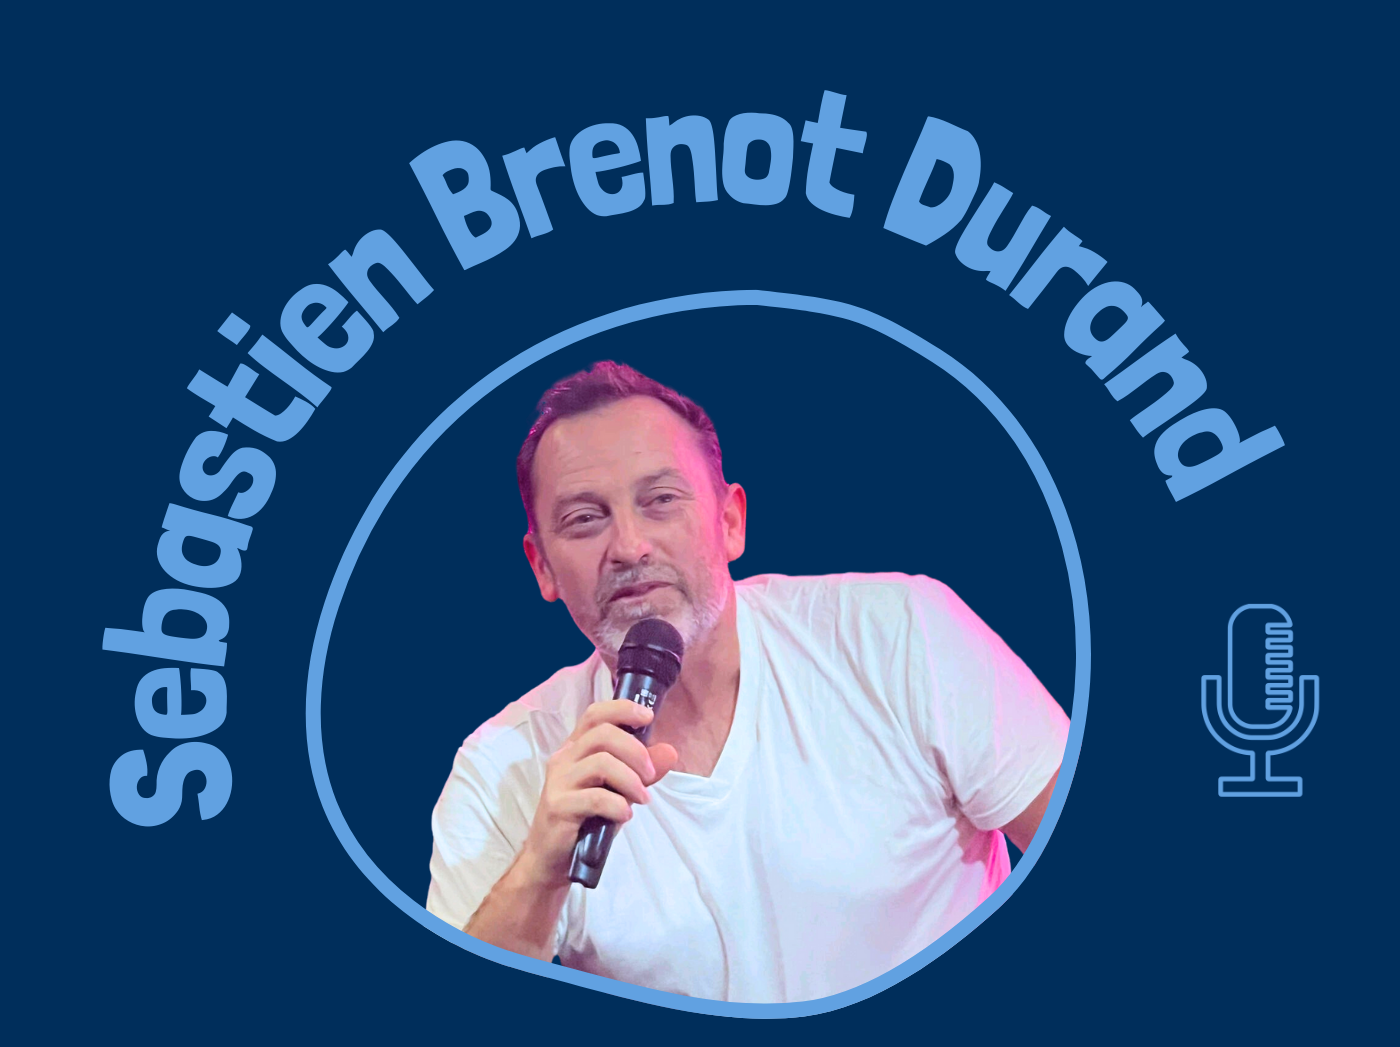 Sebastien Brenot Durand, préparateur mental, podcasteur, coach